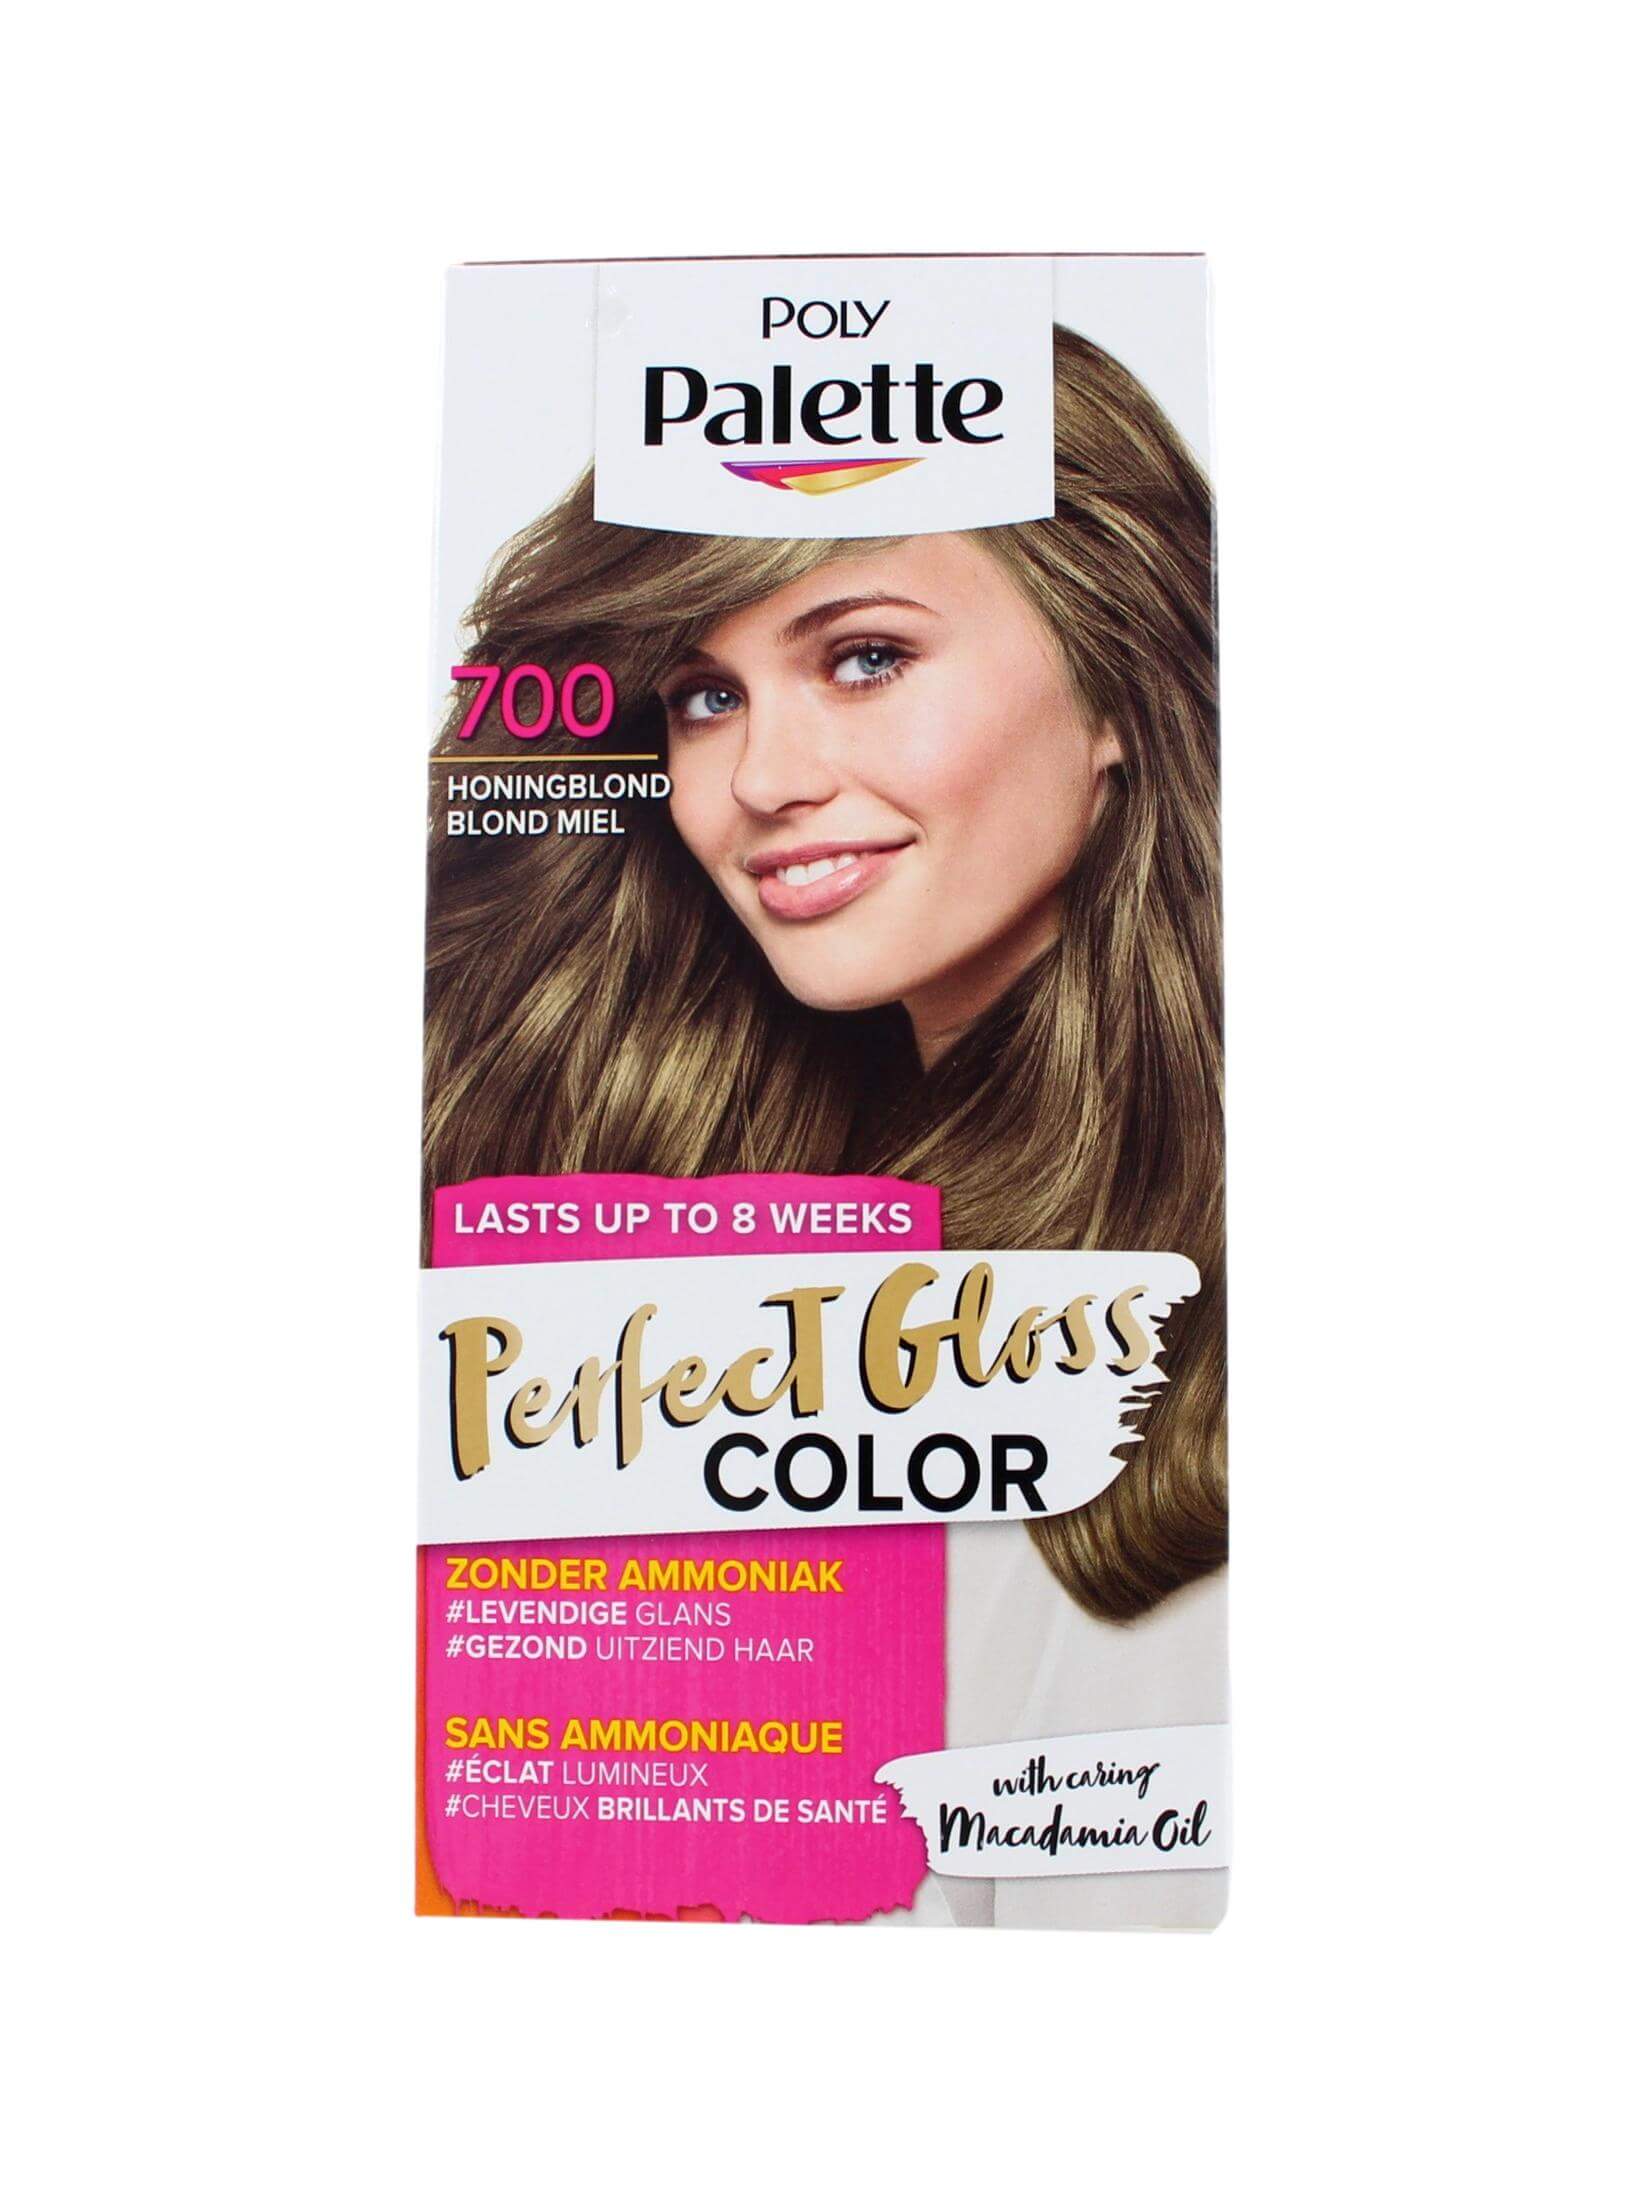 Verlaten ochtendgloren Steil Poly Palette Haarkleuring Perfect Gloss 700 Honingblond – MKB International